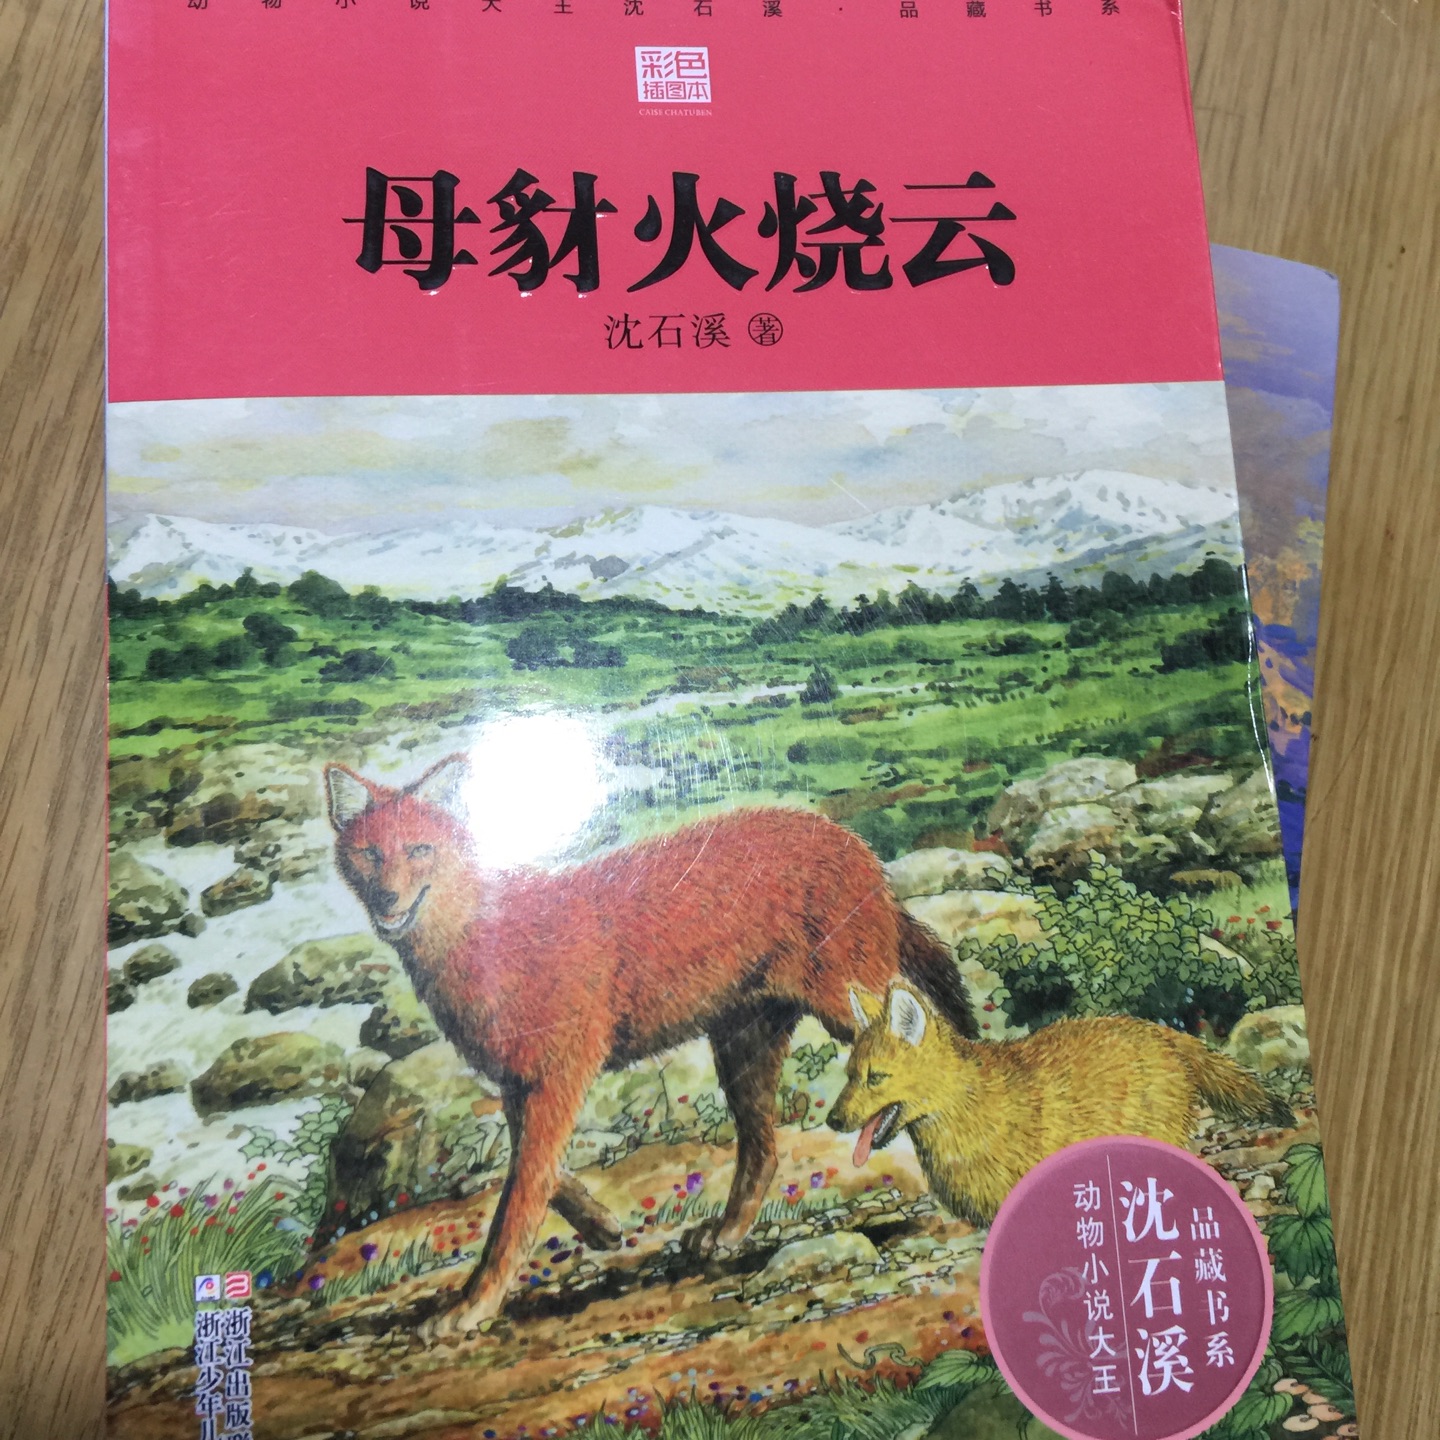 同学推荐的书籍，钟爱沈石溪的动物小说。